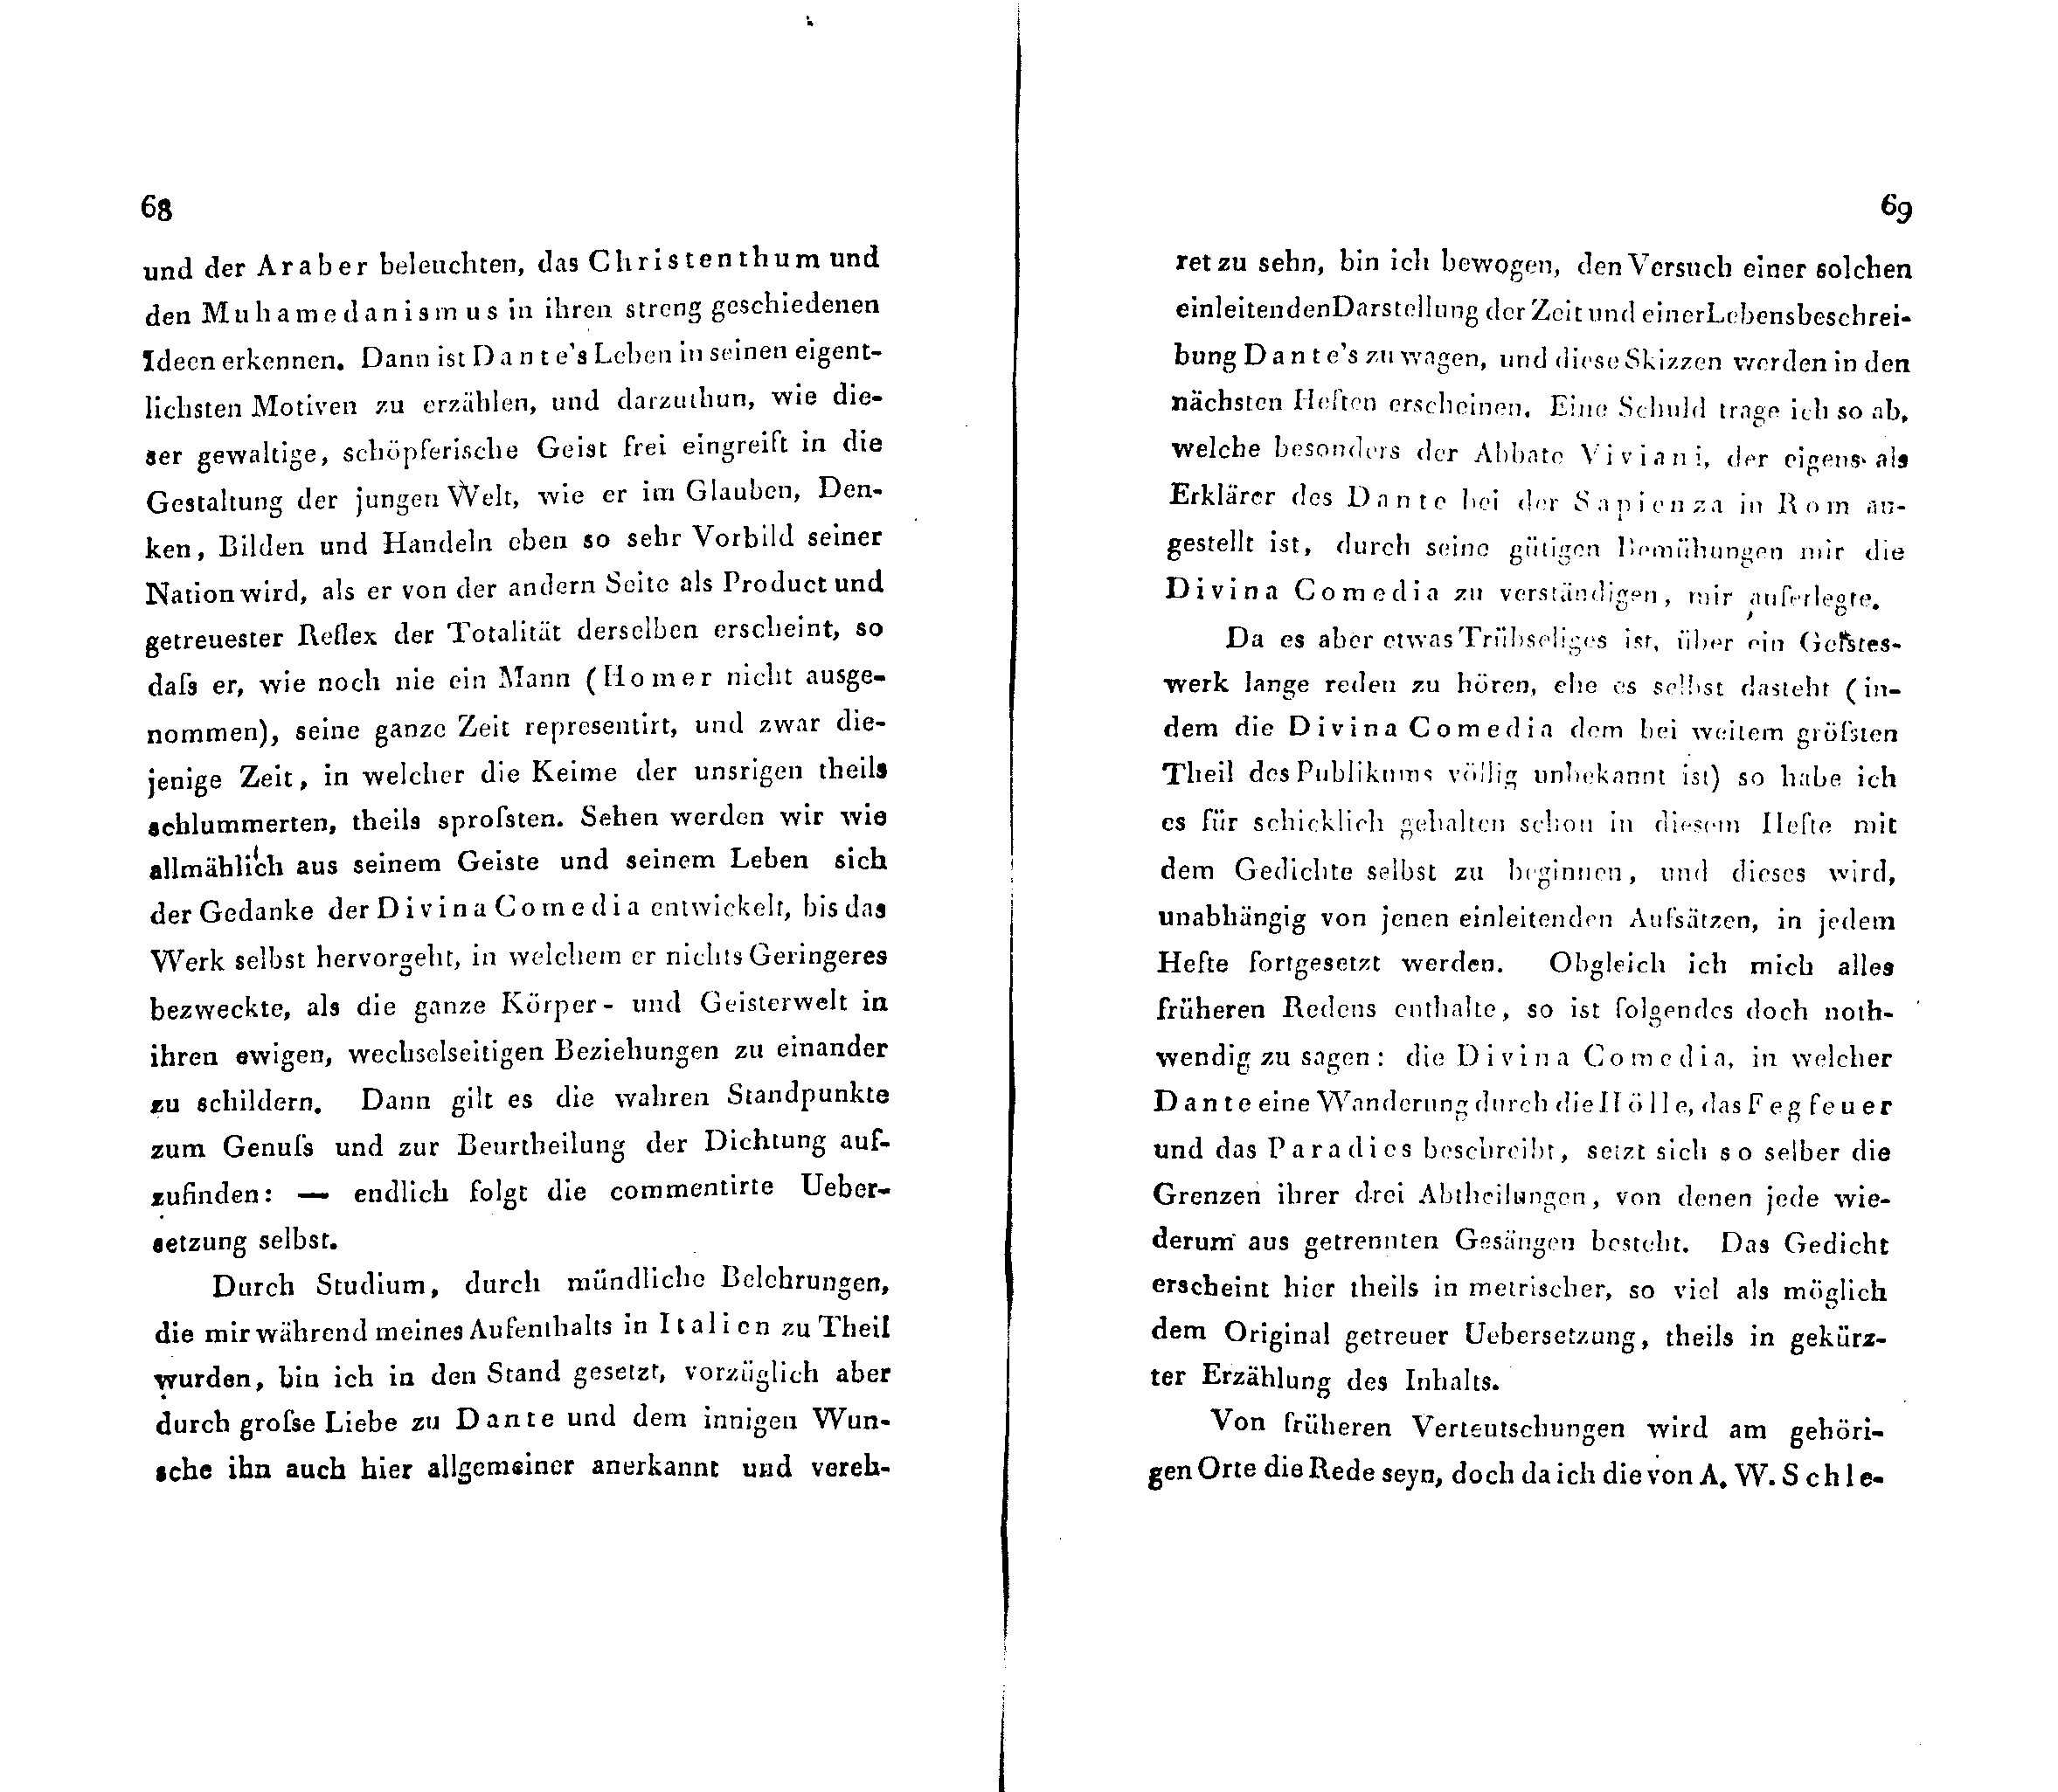 Ueber Dante Alighieri, seine Zeit und seine Divina Comedia (1824 – 1825) | 2. (68-69) Main body of text